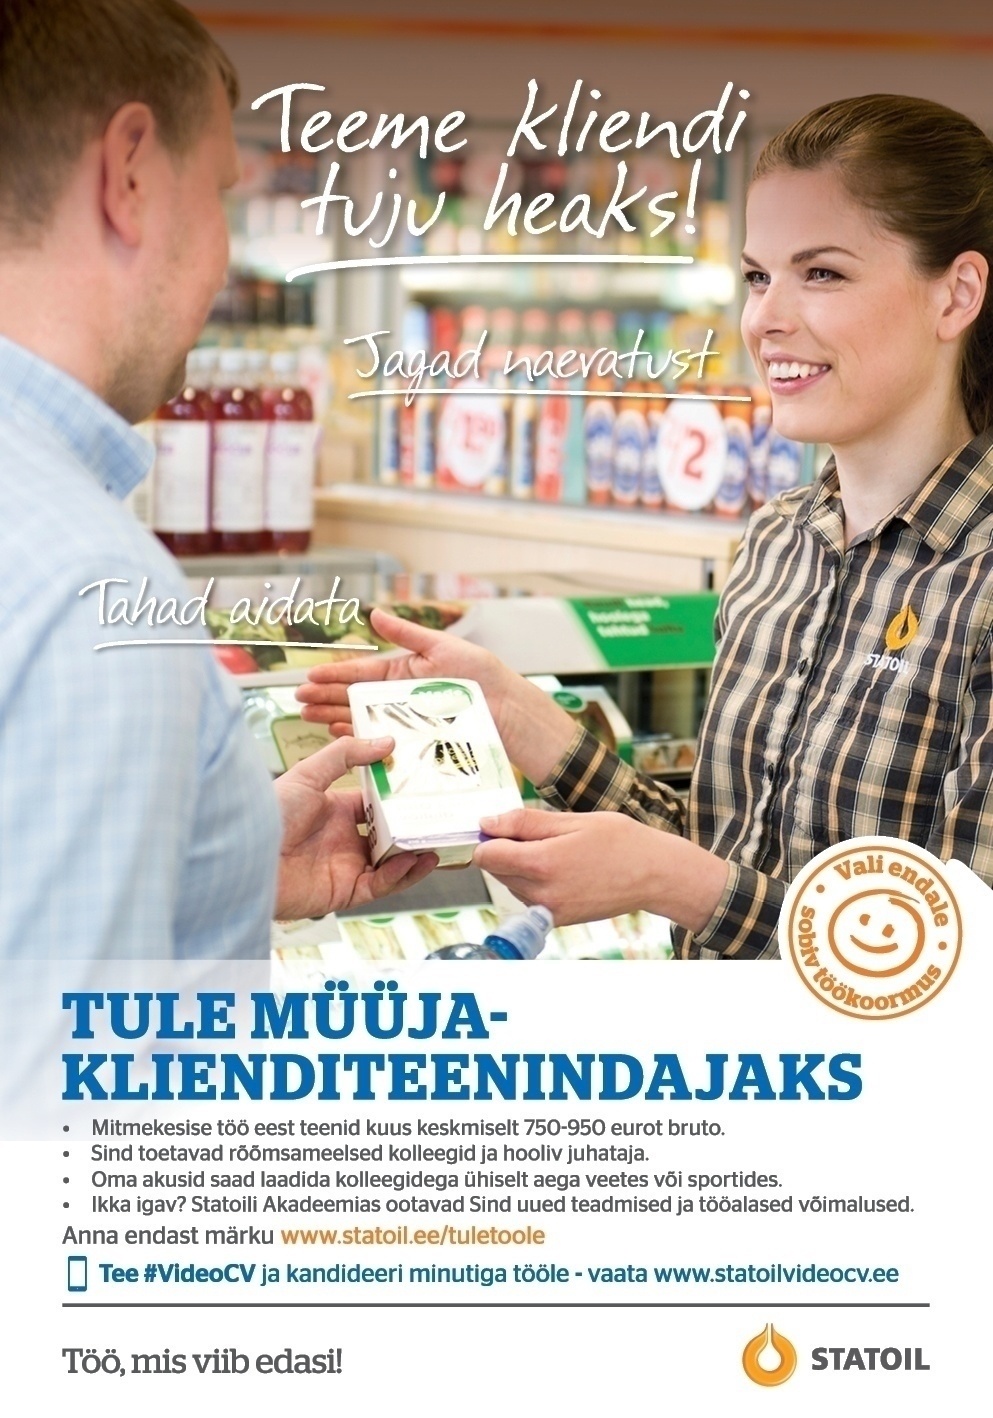 Circle K Eesti AS Müüja-klienditeenindaja Õismäe teenindusjaama